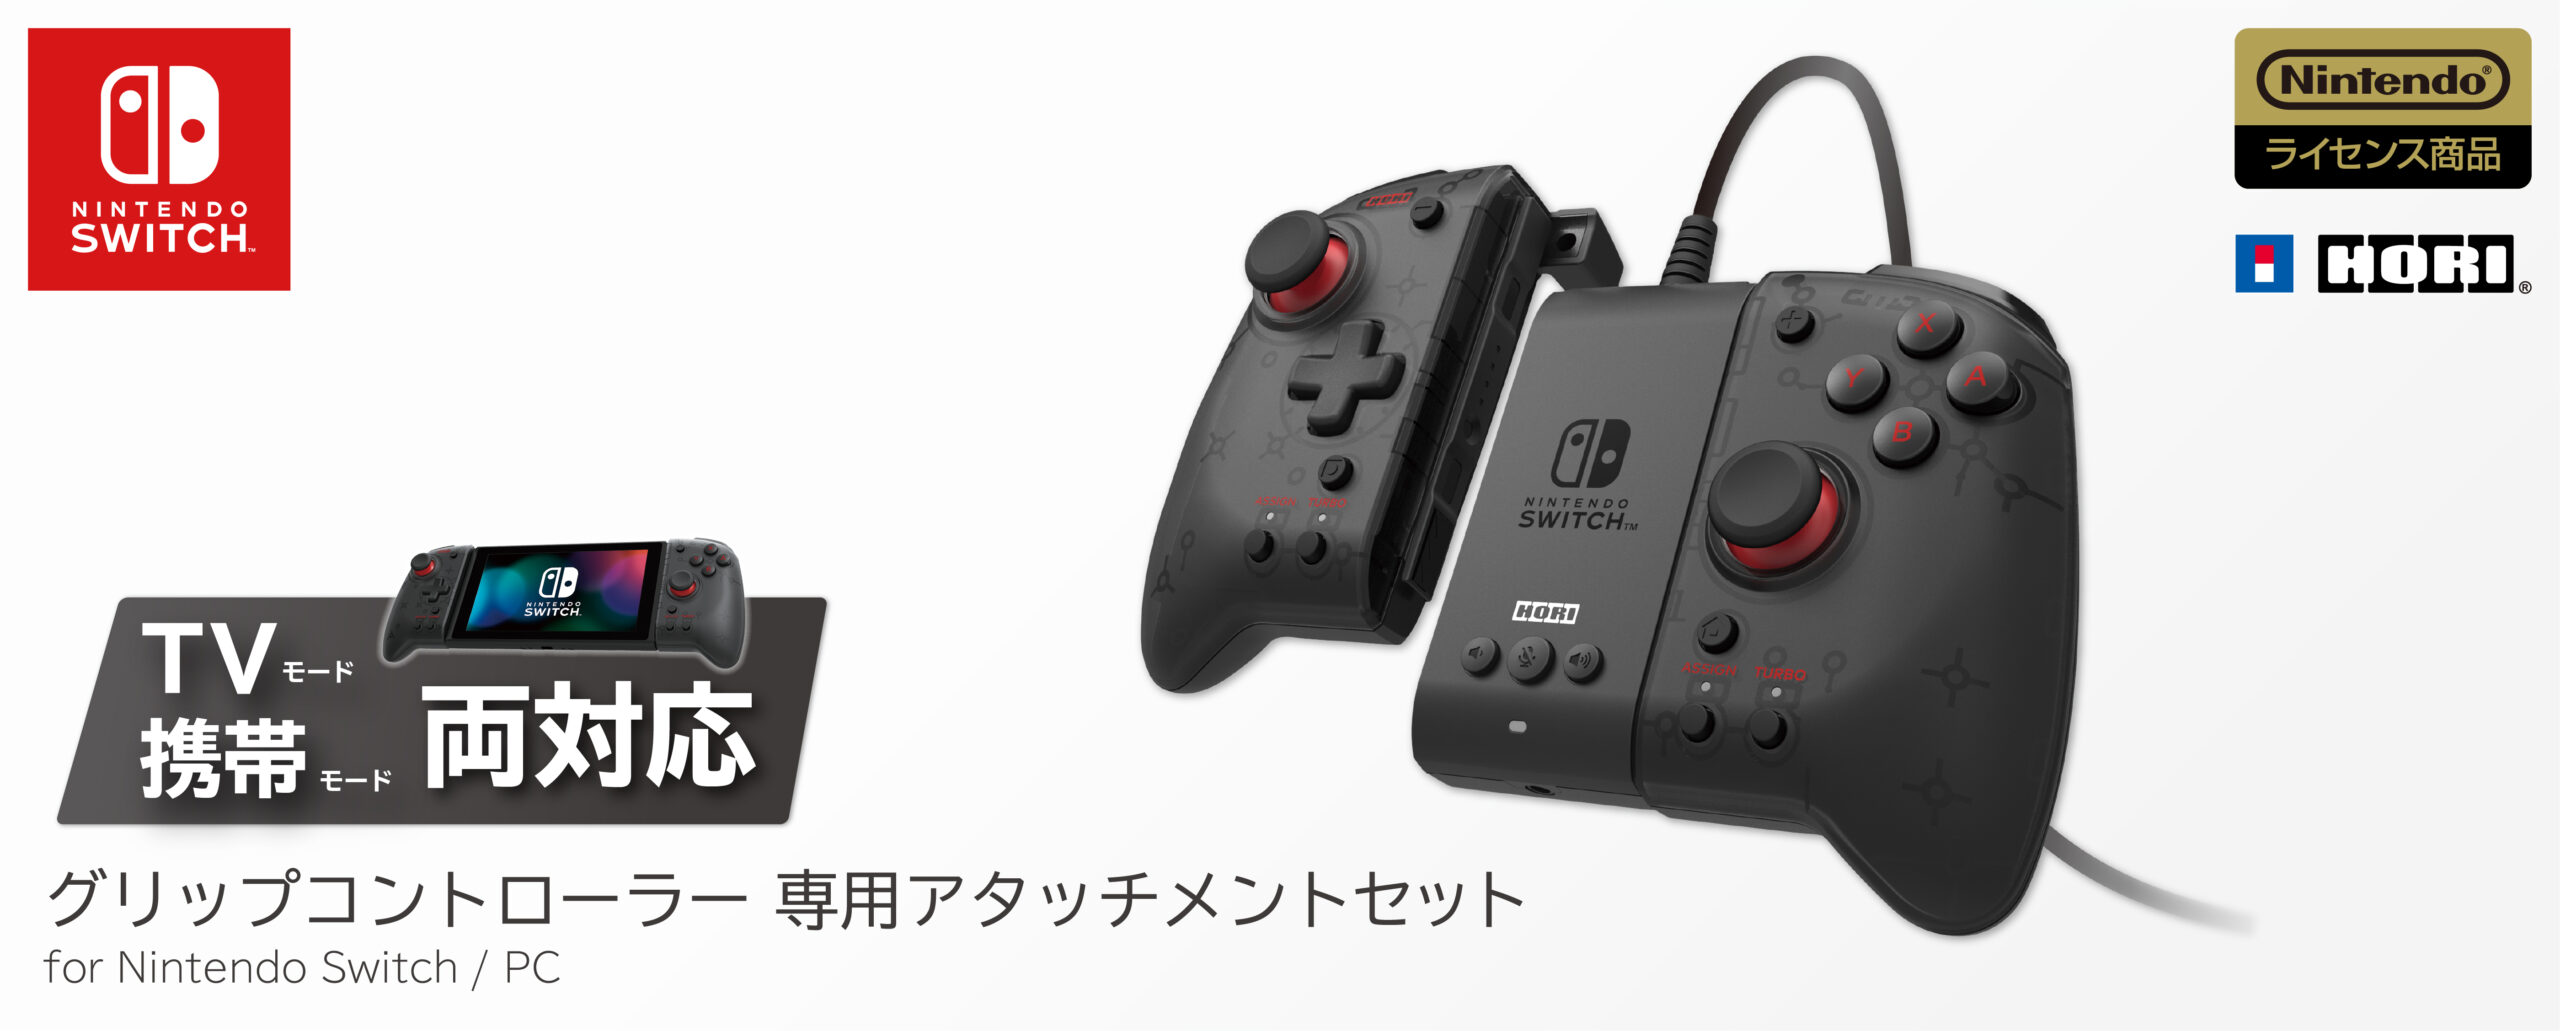 株式会社 HORI | グリップコントローラー 専用アタッチメントセット for Nintendo Switch / PC